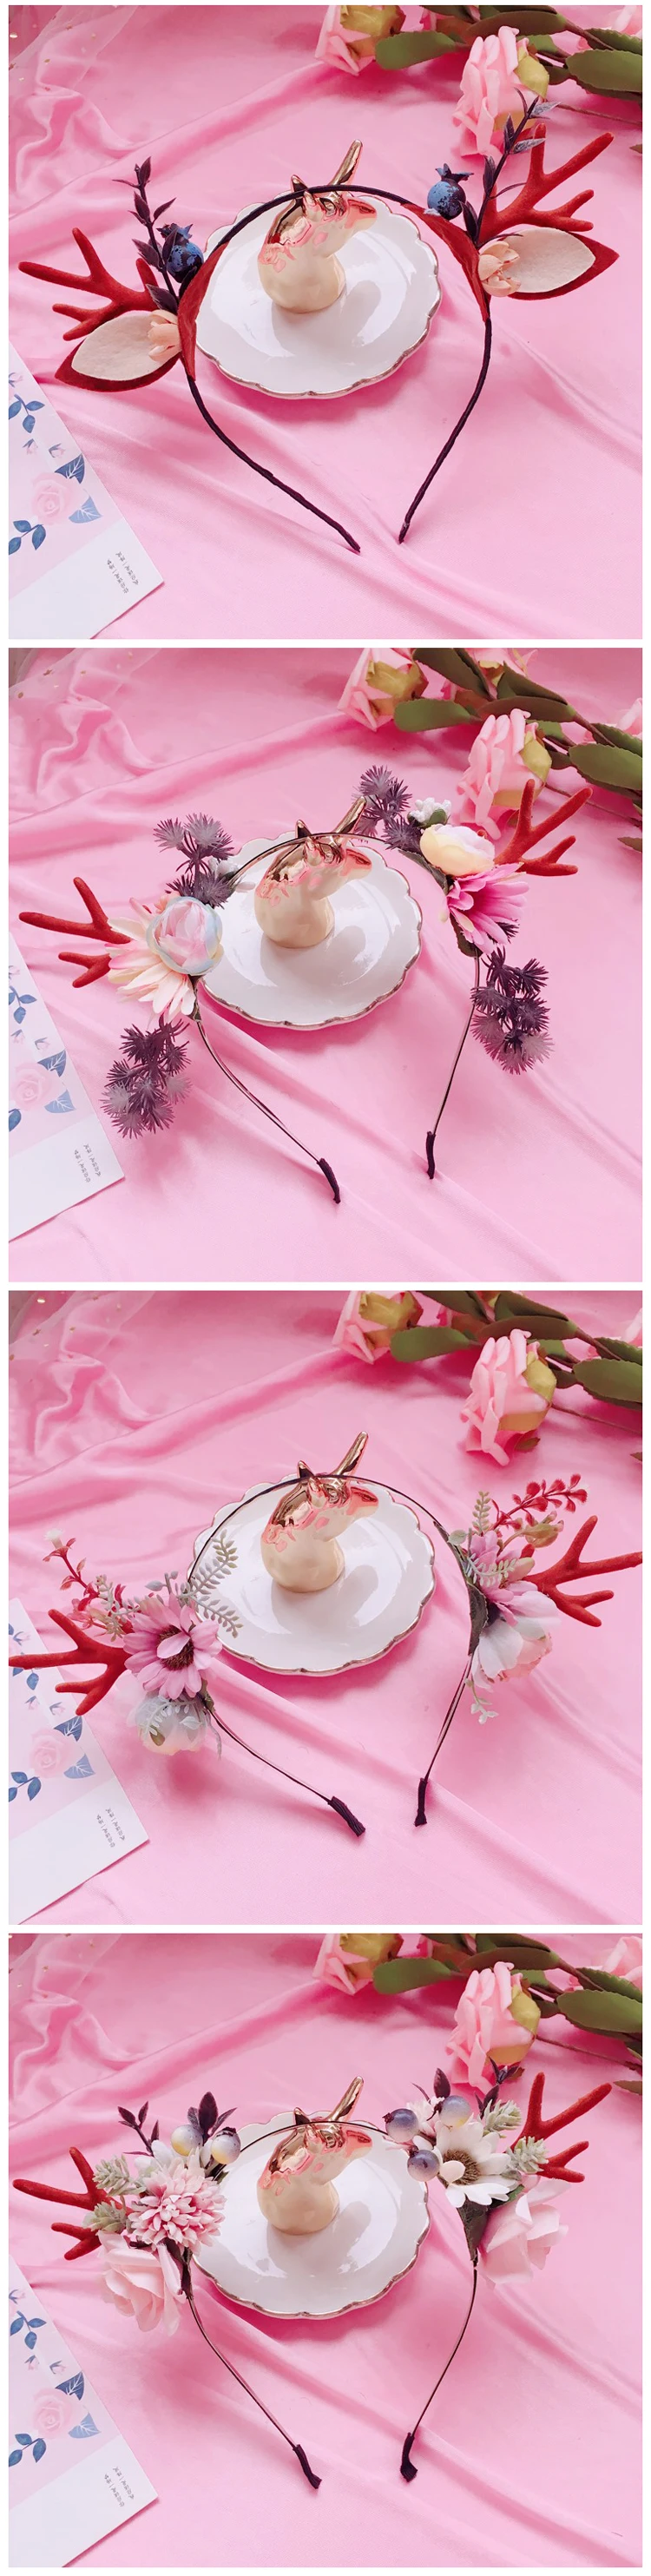 Обруч ручной работы цветок ягодные рога аксессуары для волос головной убор повязка-бандана для девочки KC сладкие украшения для волос капот Mori Girl